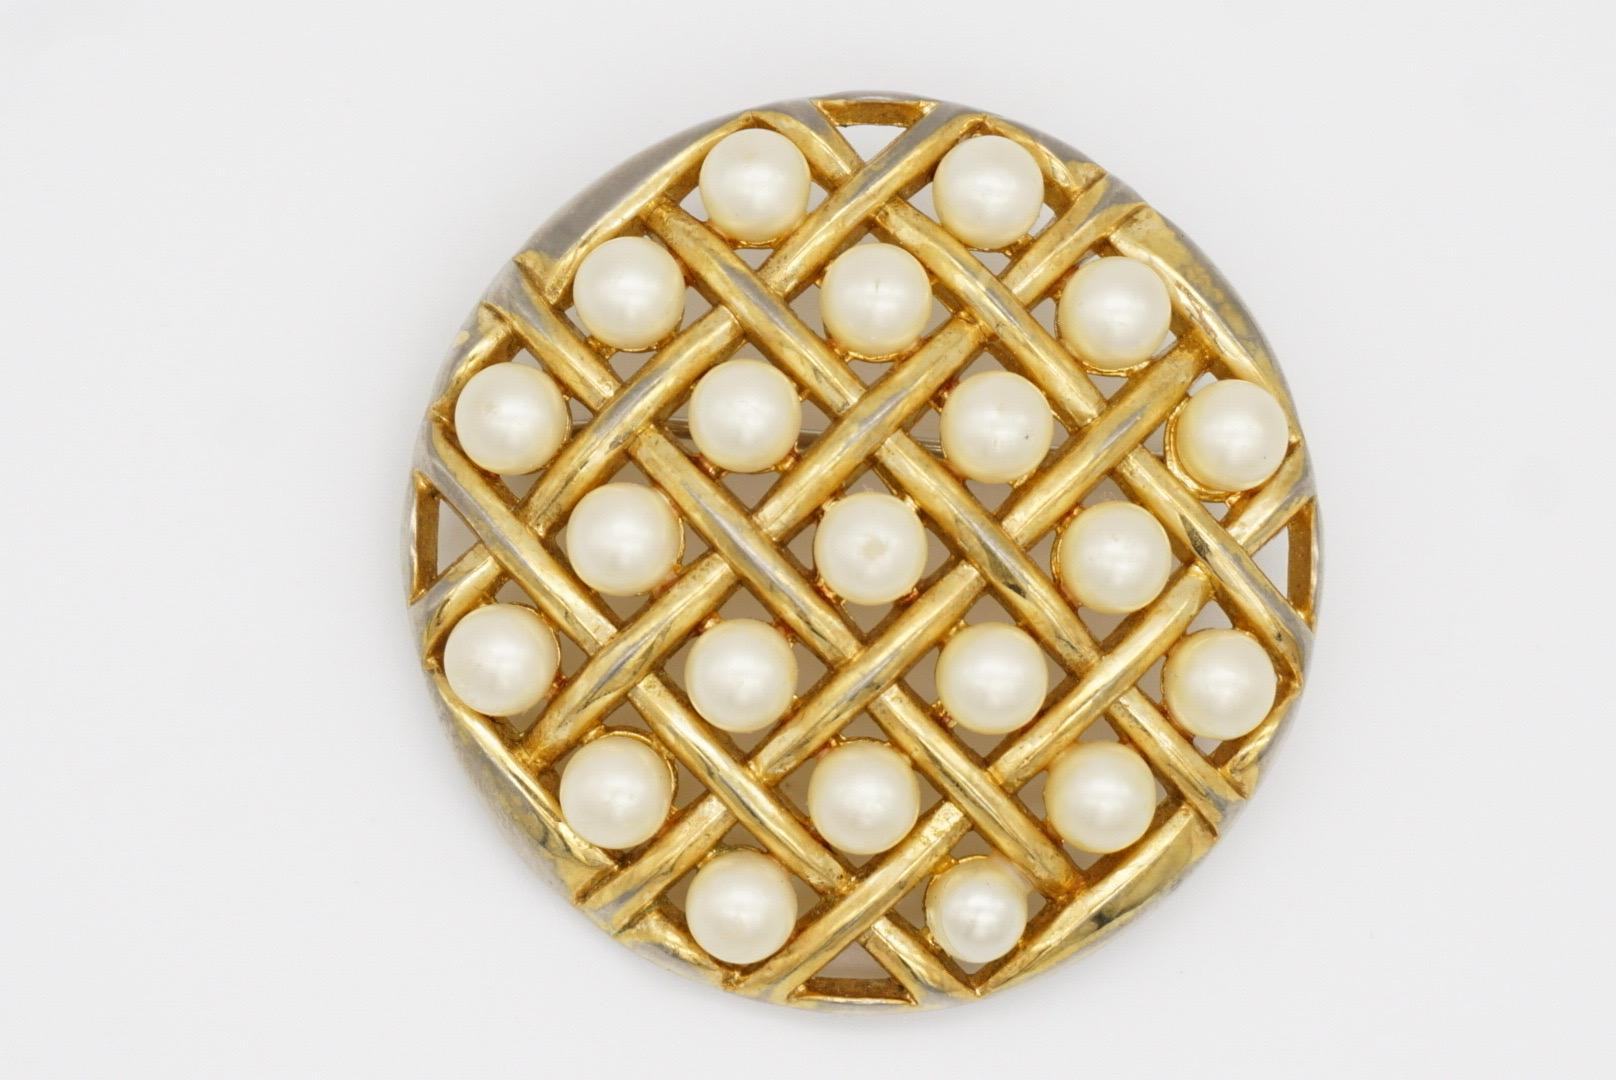 Crown Trifari 1950s Runder Kreis Weiße Perlen Durchbrochene Criss Cross Brosche, Gold-Ton

Guter Zustand, 100% echt. Nur leichter Farbverlust, immer noch schön und gut zu tragen. 

Eine sehr schöne Brosche, auf der Rückseite signiert.

Größe: